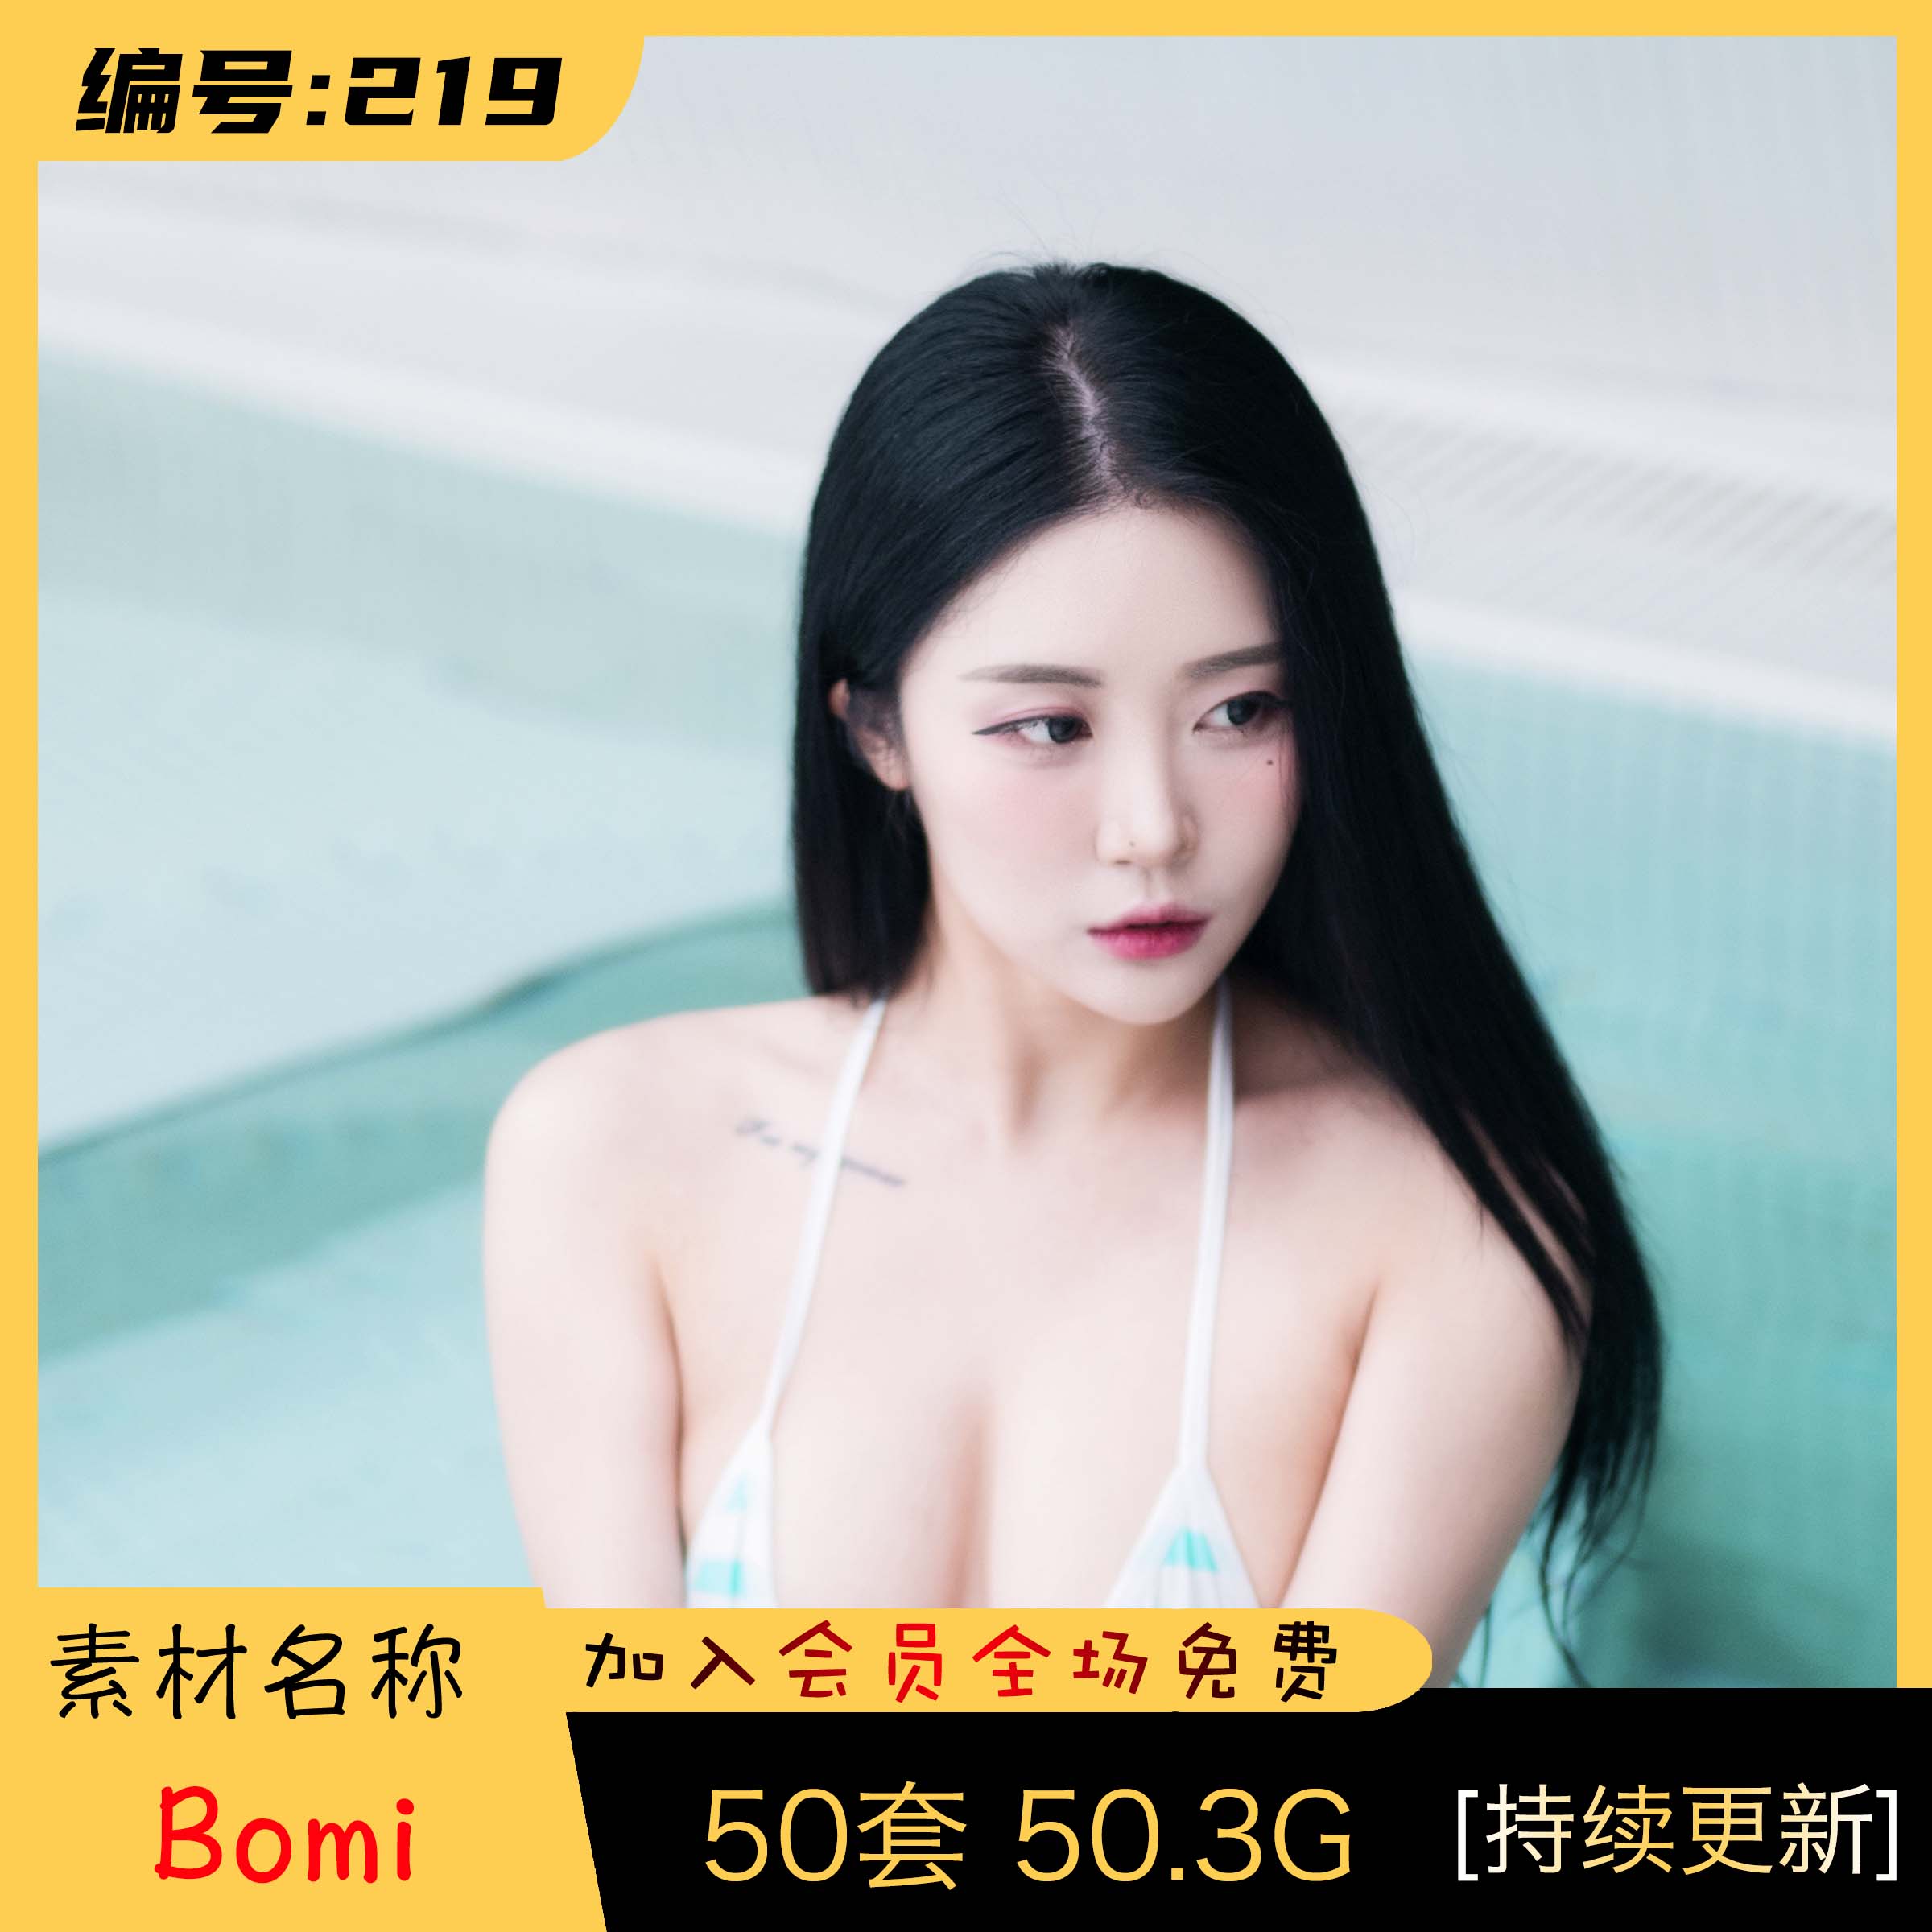 韩国妹子:Bomi (보미) 最全图包合集 [50套][持续更新]